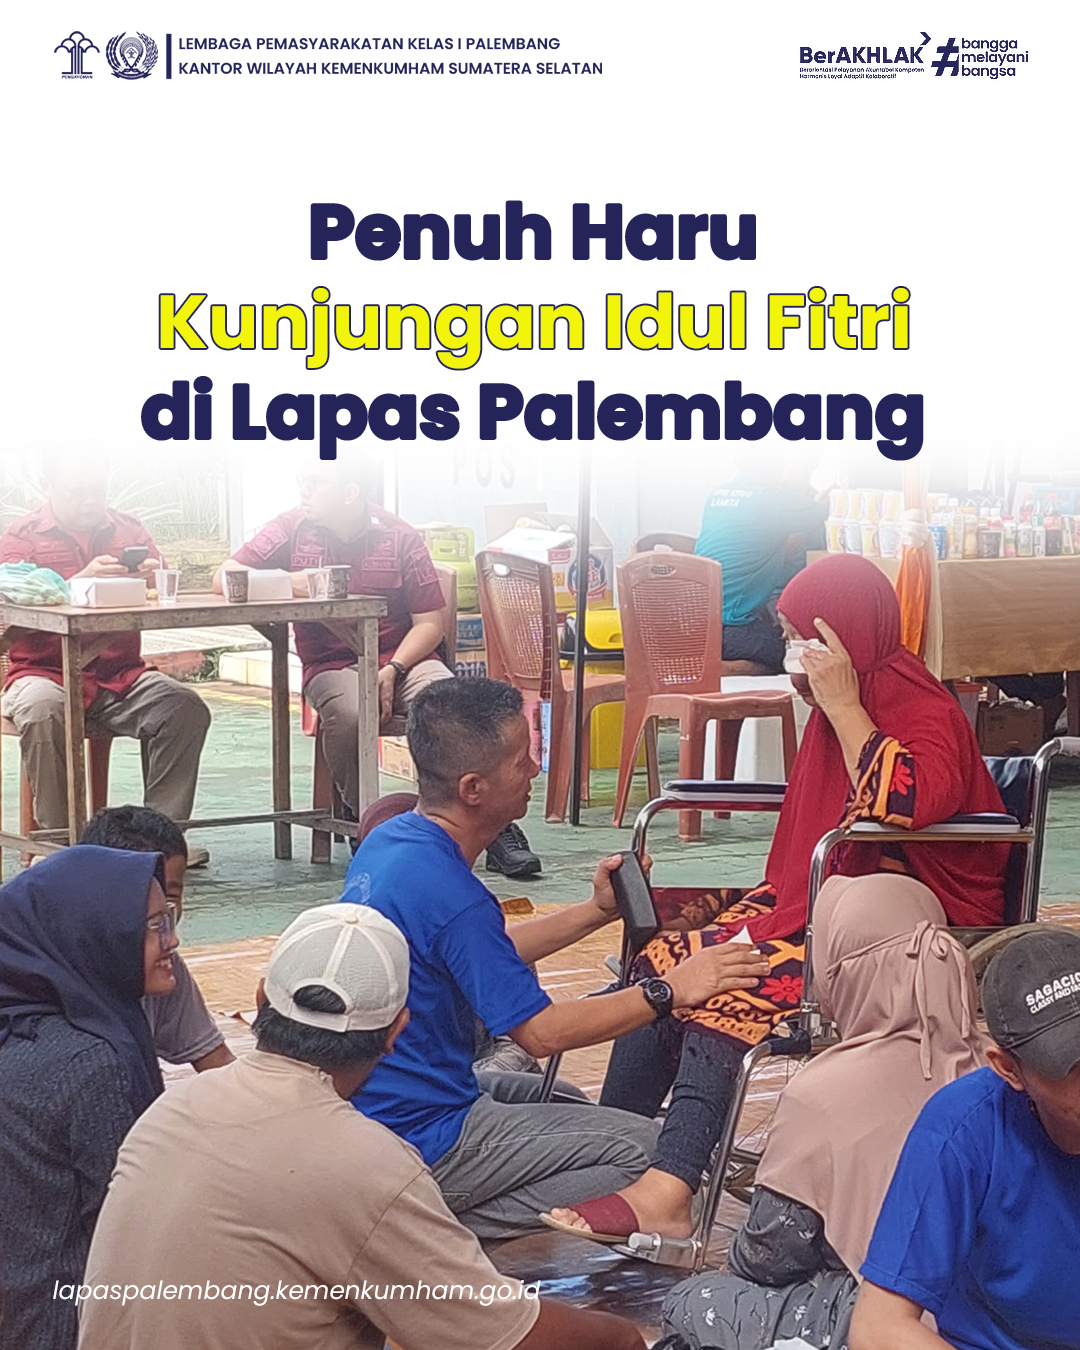 Penuh Haru, Kunjungan Khusus Hari Raya Idul Fitri di Lapas Palembang